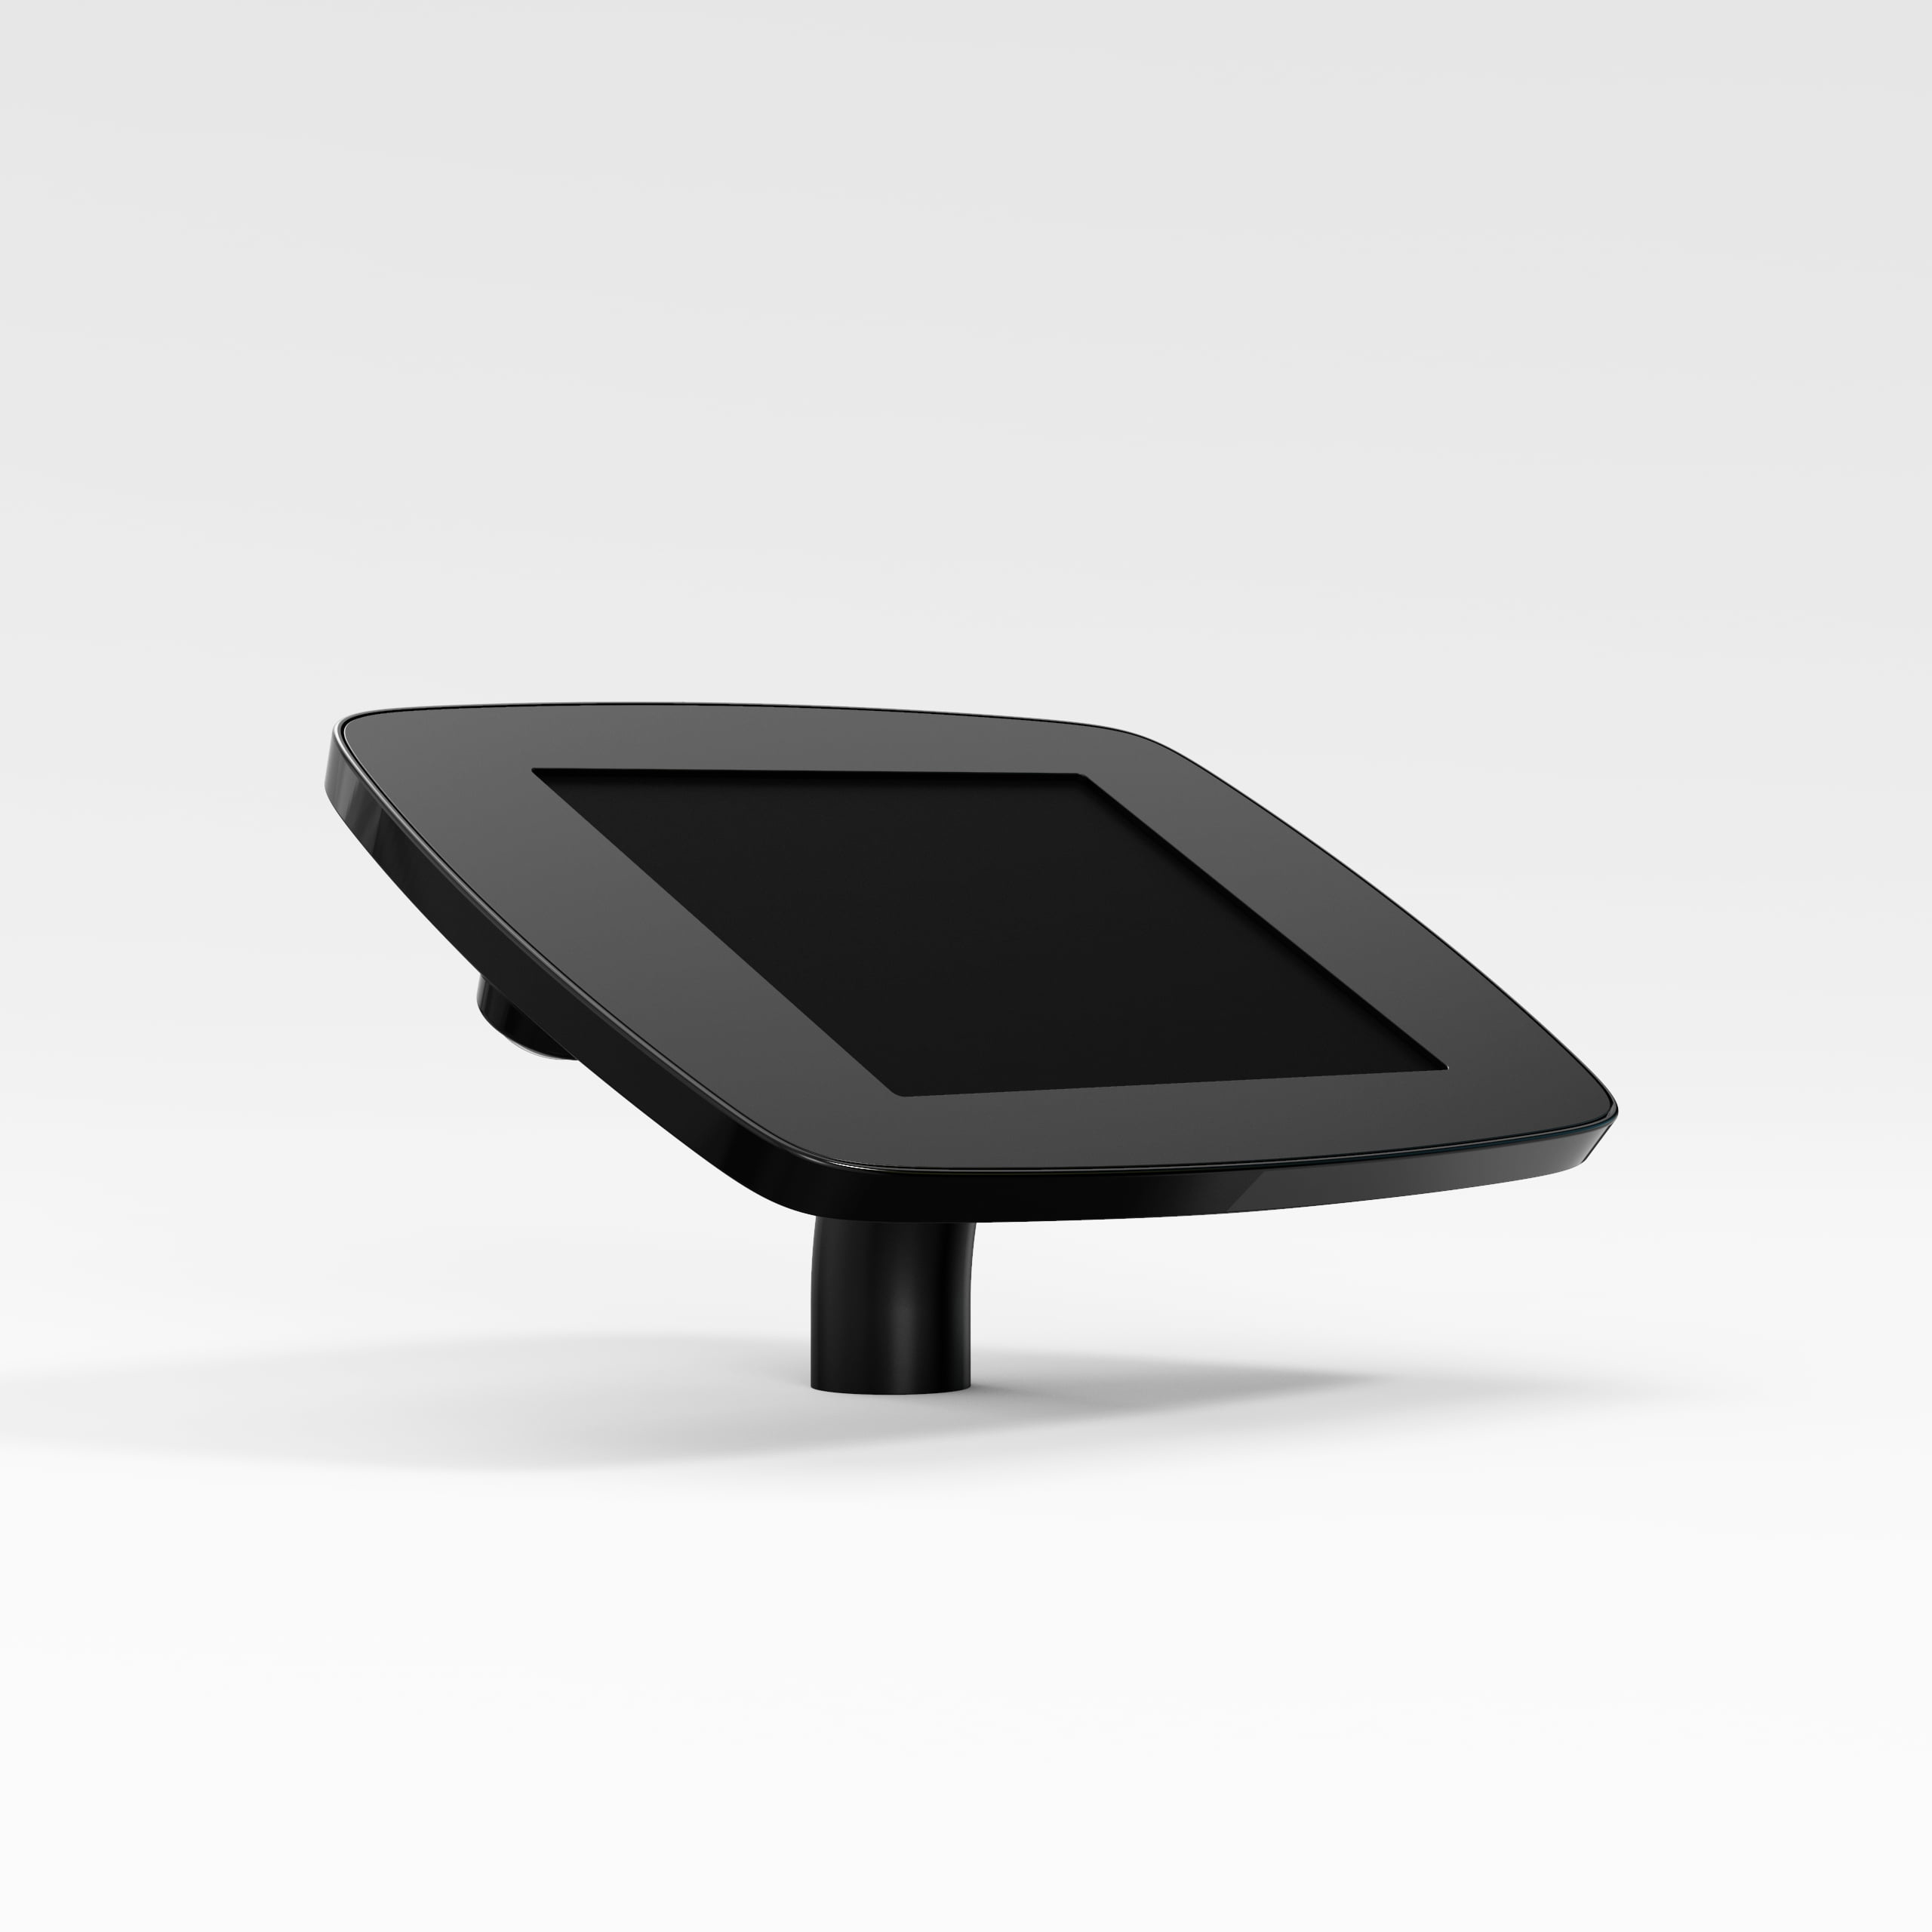 Bouncepad Desk supporto antifurto per tablet 20,1 cm [7.9] Nero (DESKBLKCLOSEDCAM/CLOSEDHOME M4)